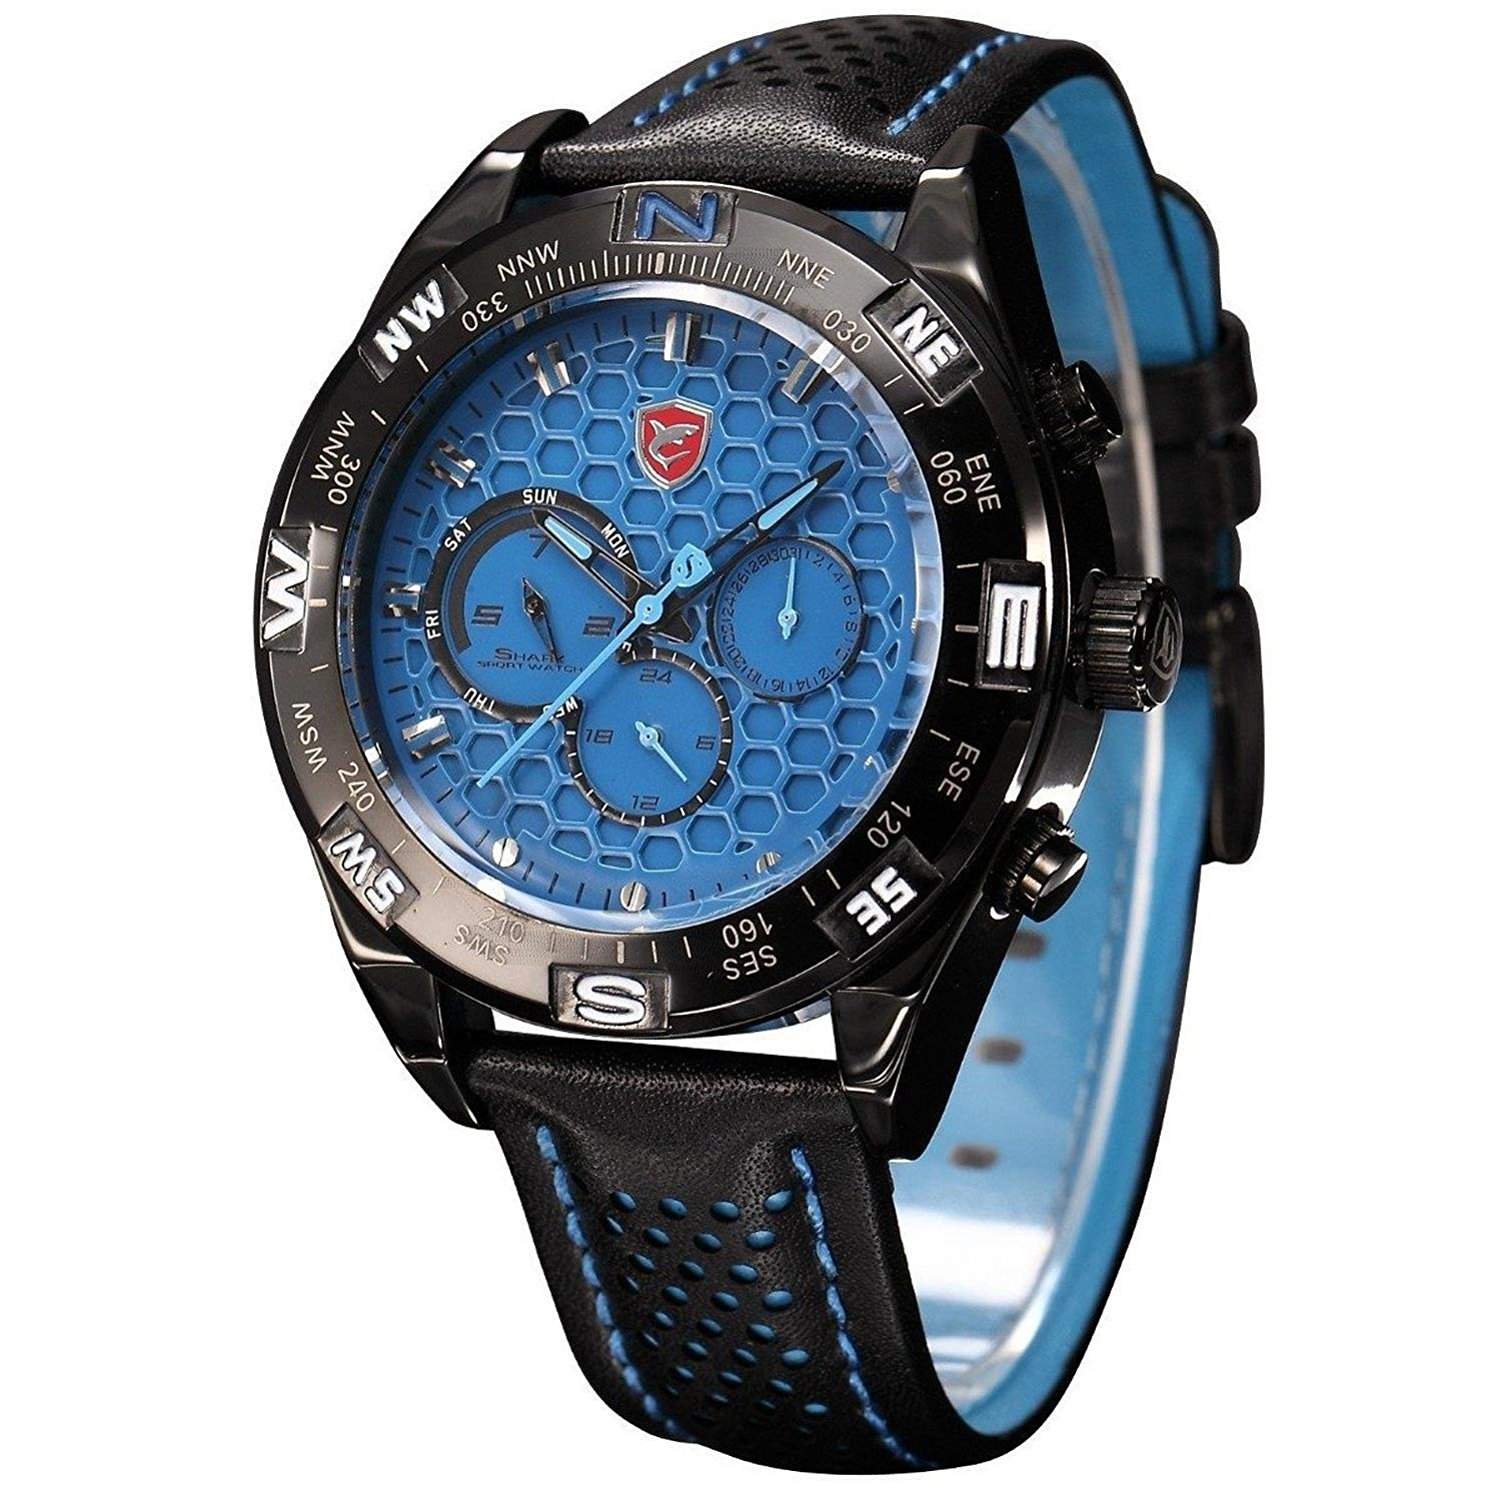 Shark Sportuhr XL gross Herren Uhr Analog Quarzuhr Blau Armband Uhr Leder